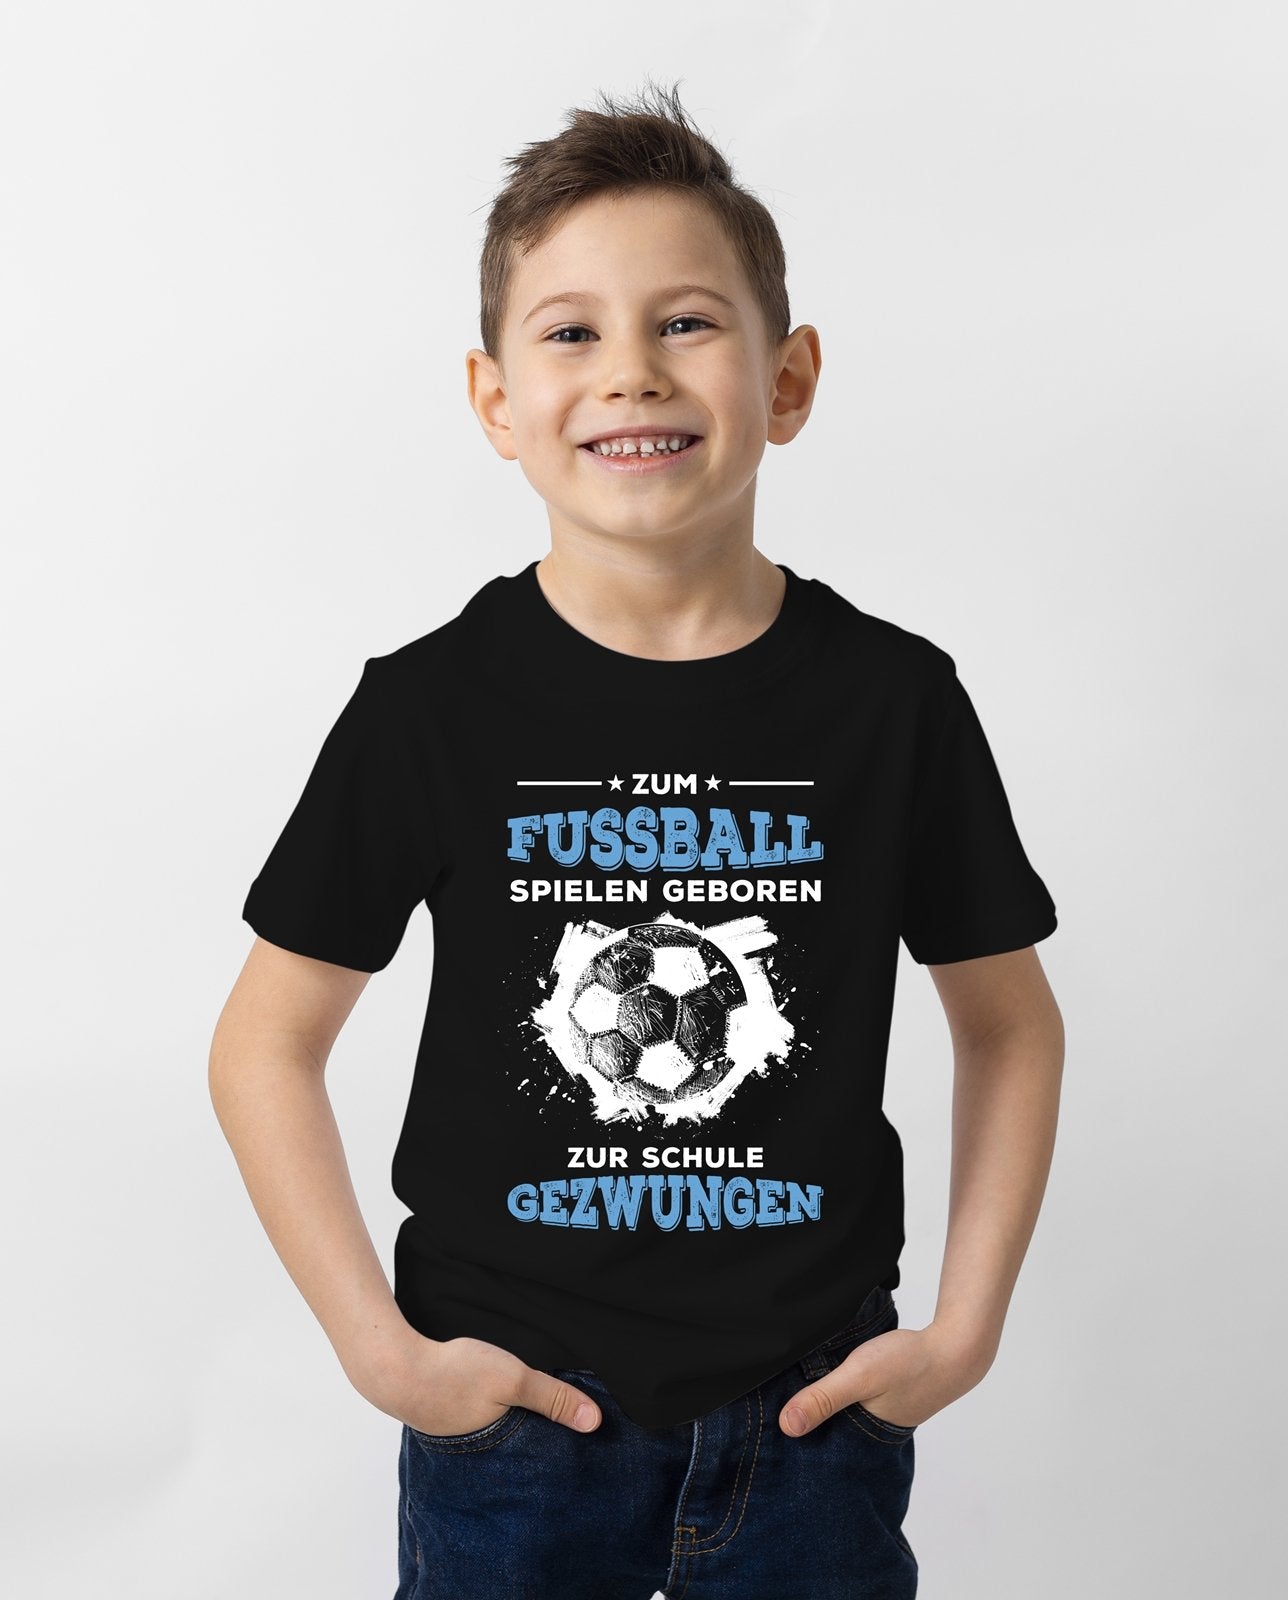 Bild: T-Shirt Kinder - Zum Fussball geboren Zur Schule gezwungen Geschenkidee